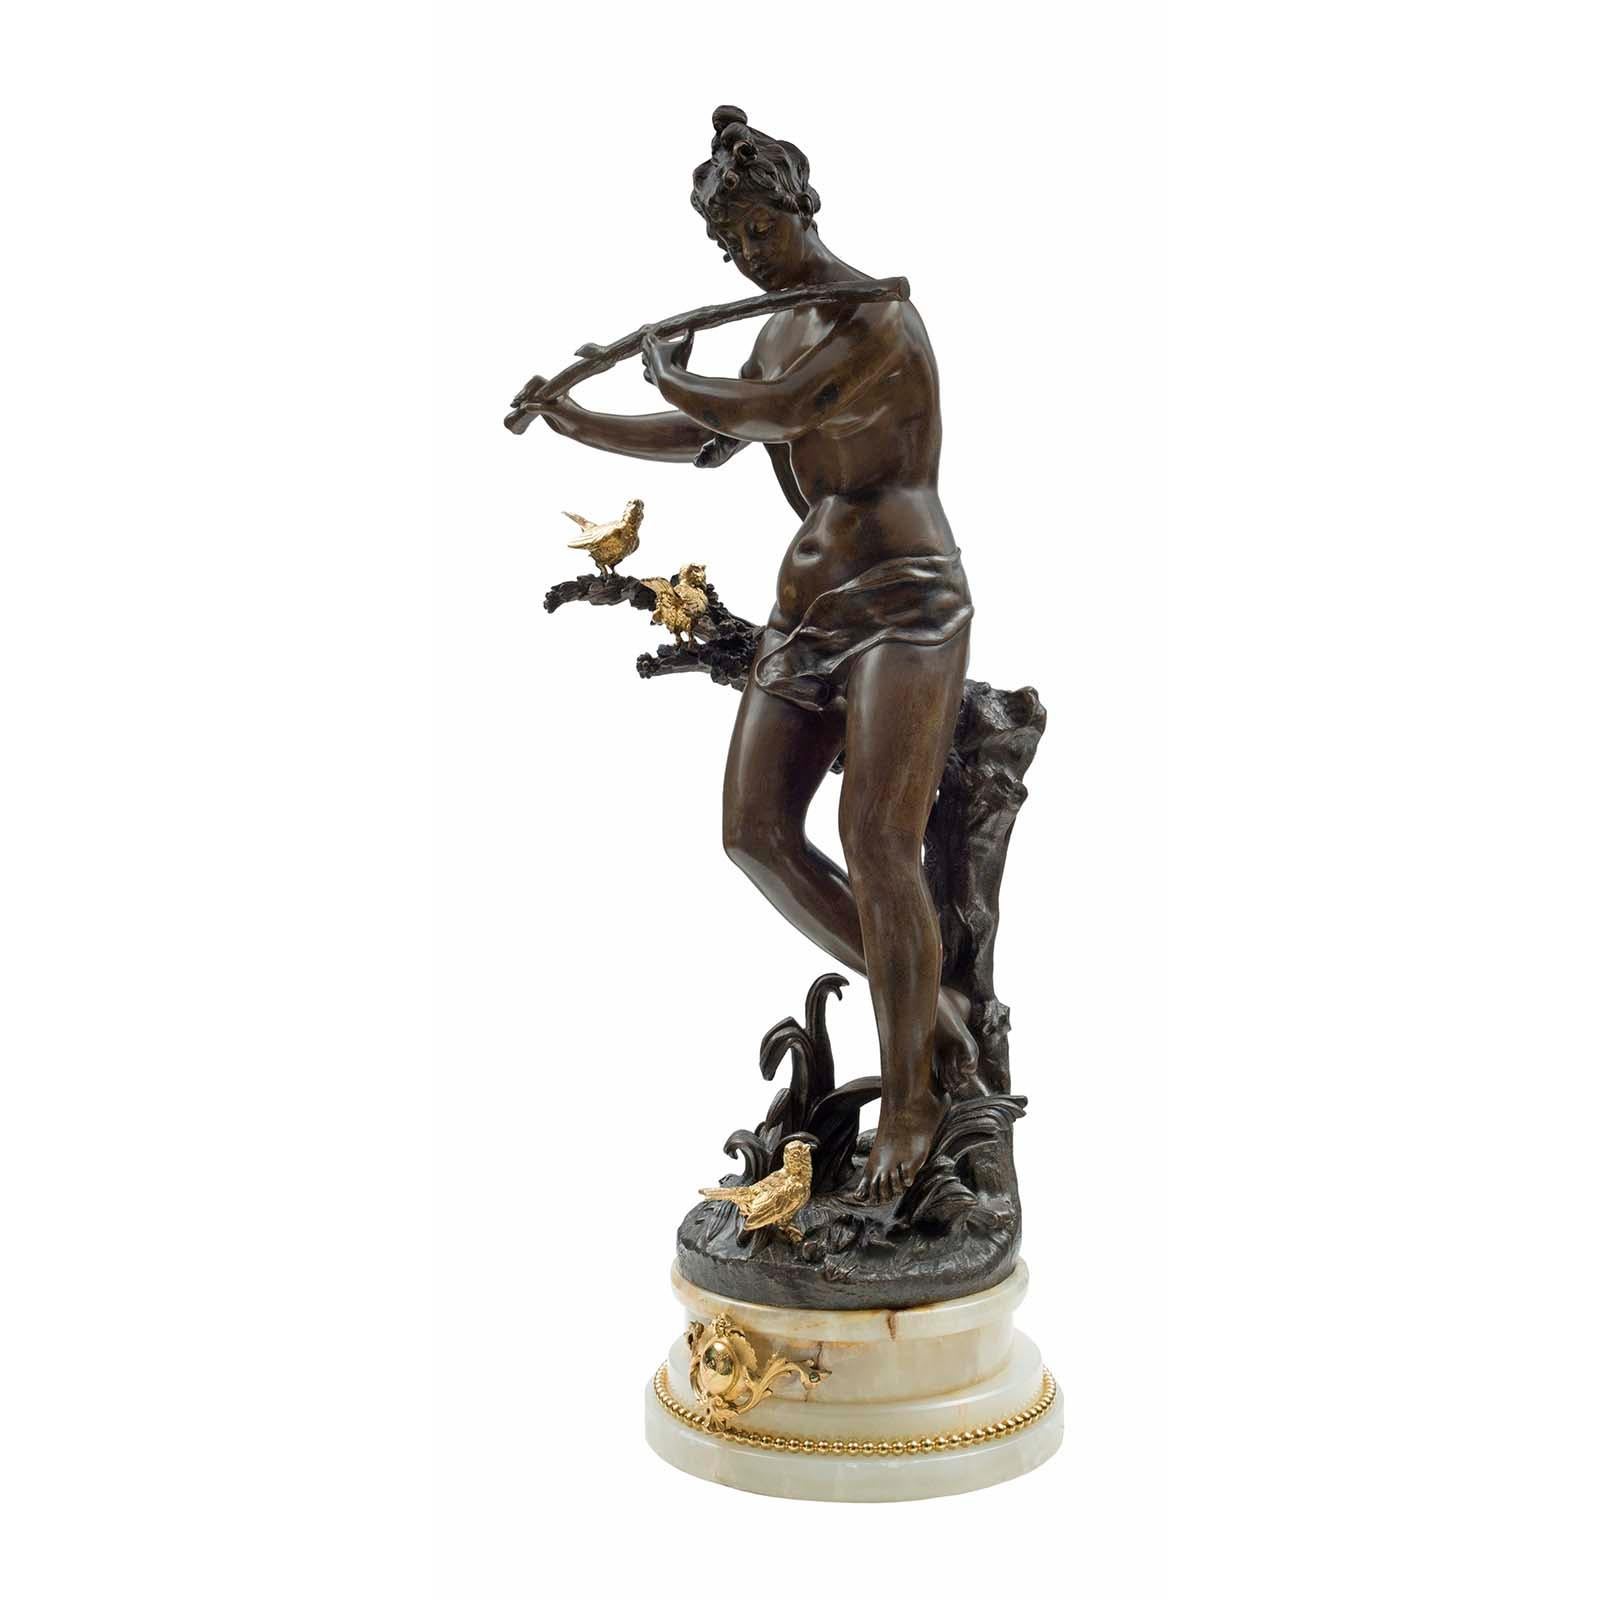 Charmante statue française du XIXe siècle de style Louis XVI en bronze patiné, bronze doré et onyx, signée Rousseau. La statue est surélevée par un socle en onyx crème moucheté, décoré d'une bande perlée en bronze doré et d'un écusson frontal